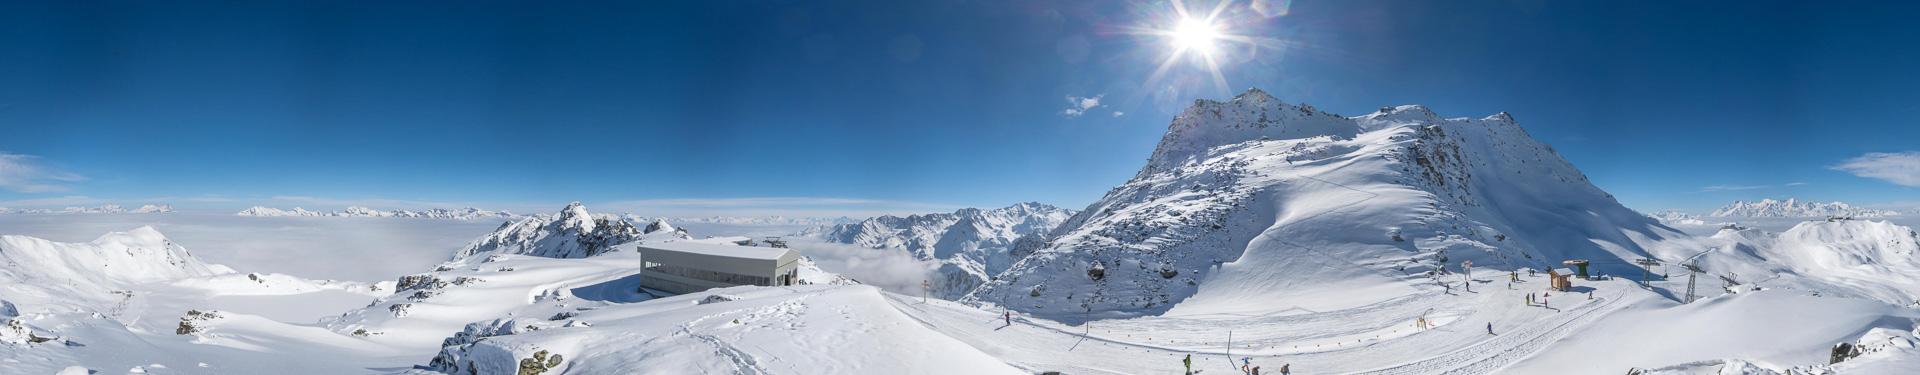 Panorama im Skigebiet mit Mont Gelé im Vordergrund.